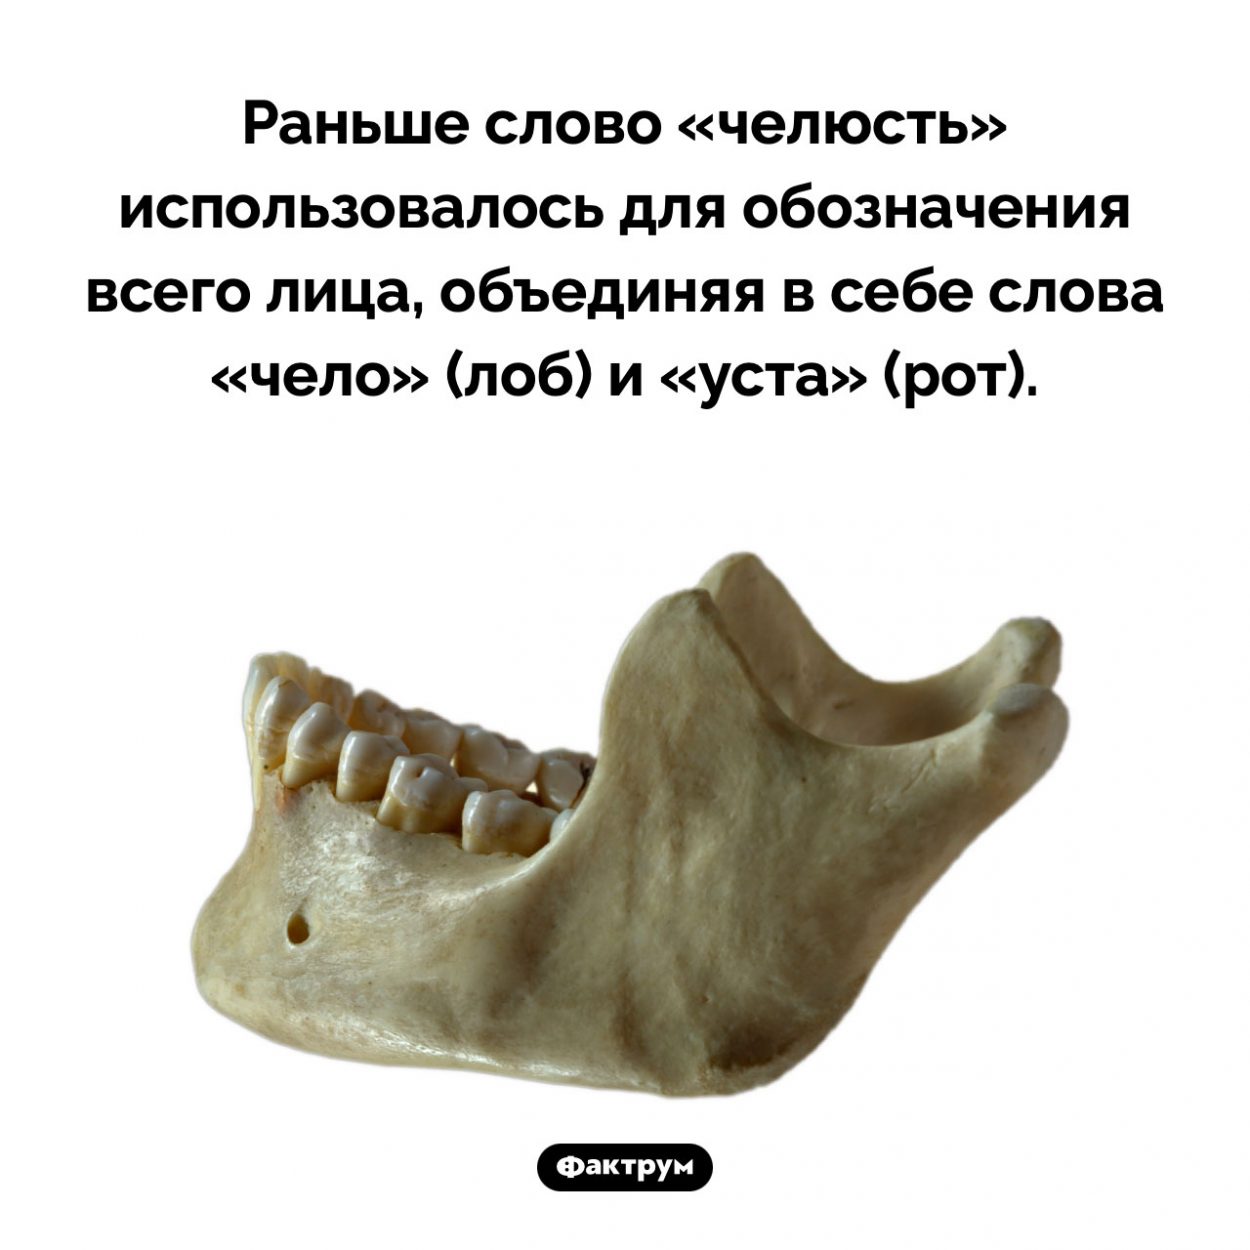 Происхождение слова «челюсть». Раньше слово «челюсть» использовалось для обозначения всего лица, объединяя в себе слова «чело» (лоб) и «уста» (рот).